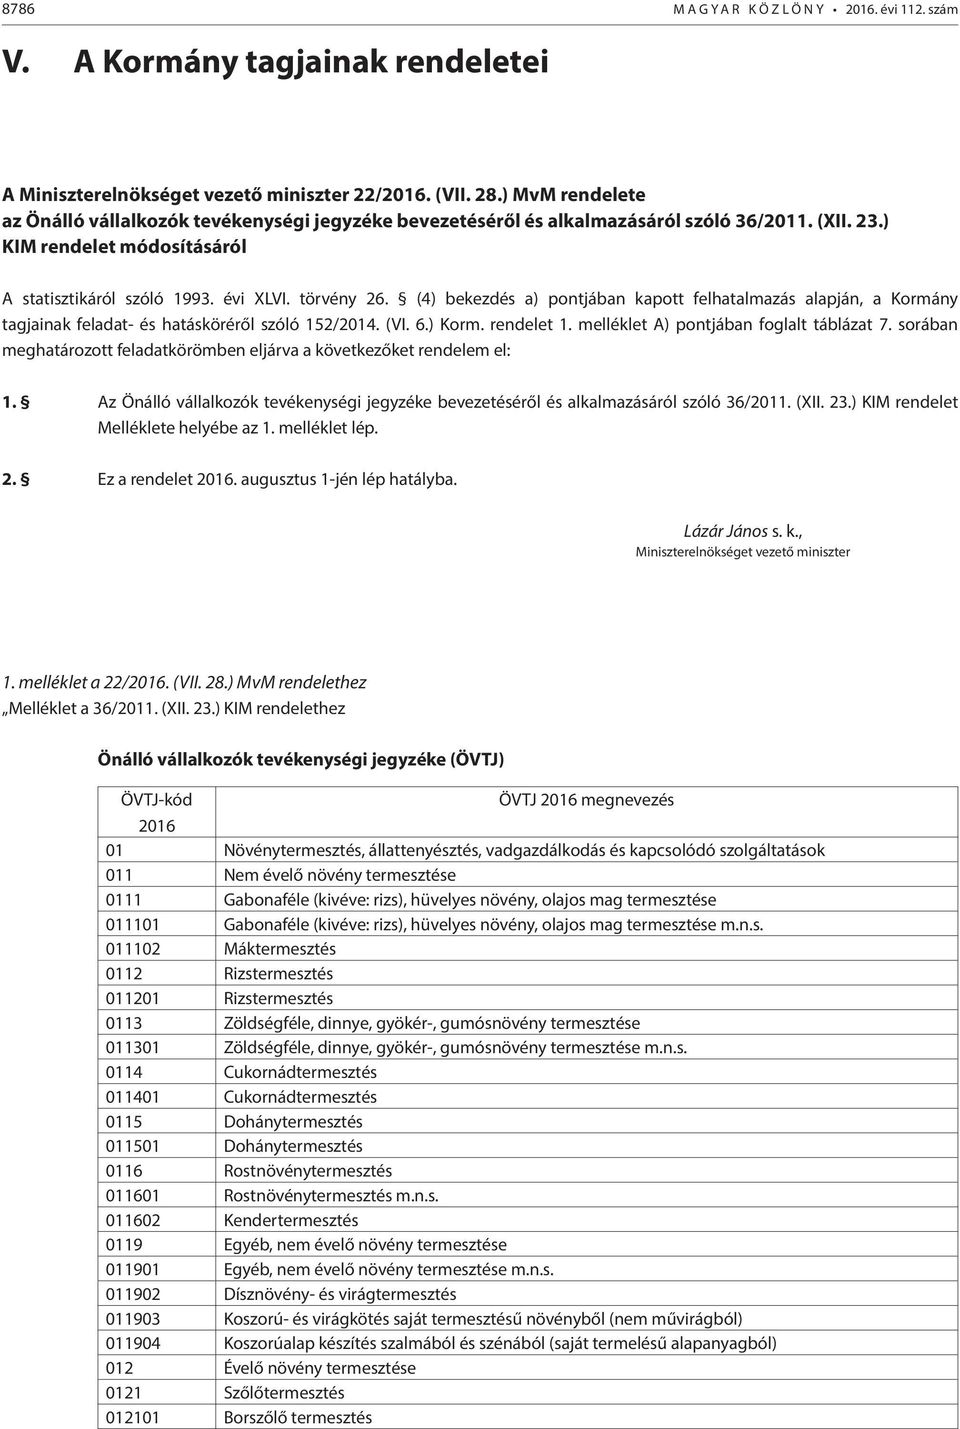 (4) bekezdés a) pontjában kapott felhatalmazás alapján, a Kormány tagjainak feladat- és hatásköréről szóló 152/2014. (VI. 6.) Korm. rendelet 1. melléklet A) pontjában foglalt táblázat 7.